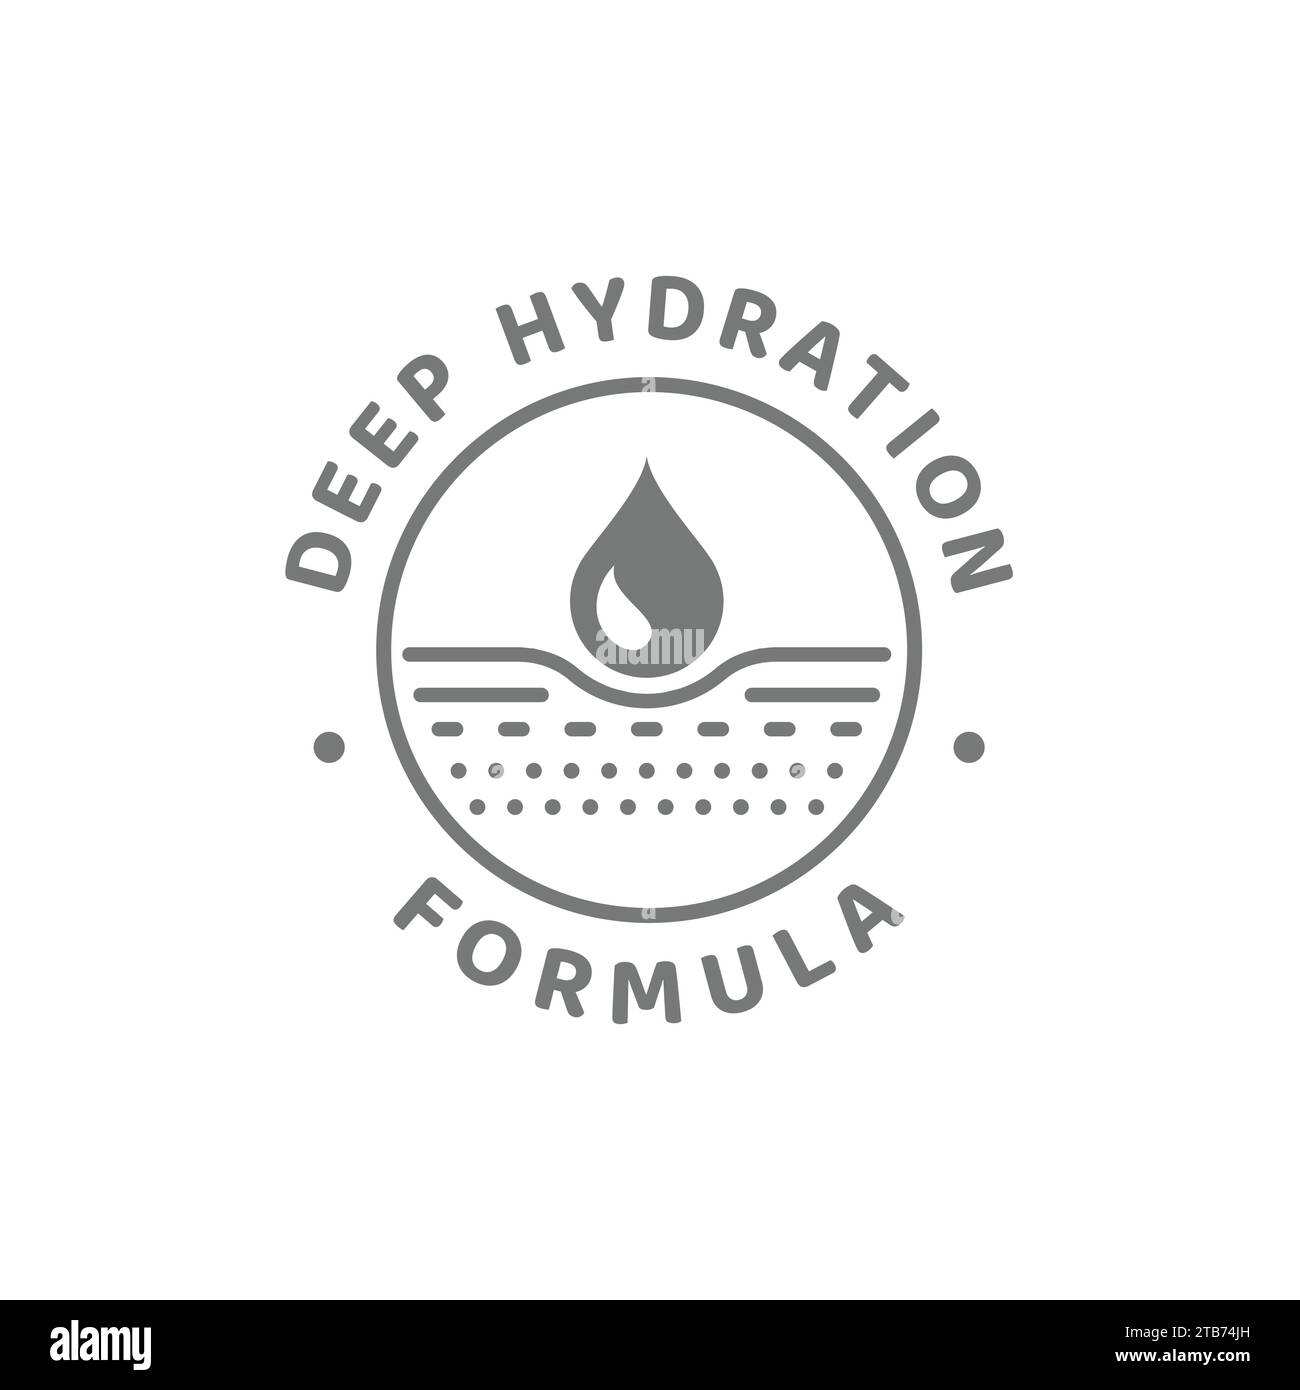 Etichetta della formula di idratazione profonda per la cura della pelle. Crema, lozione e timbro idratante. Illustrazione Vettoriale